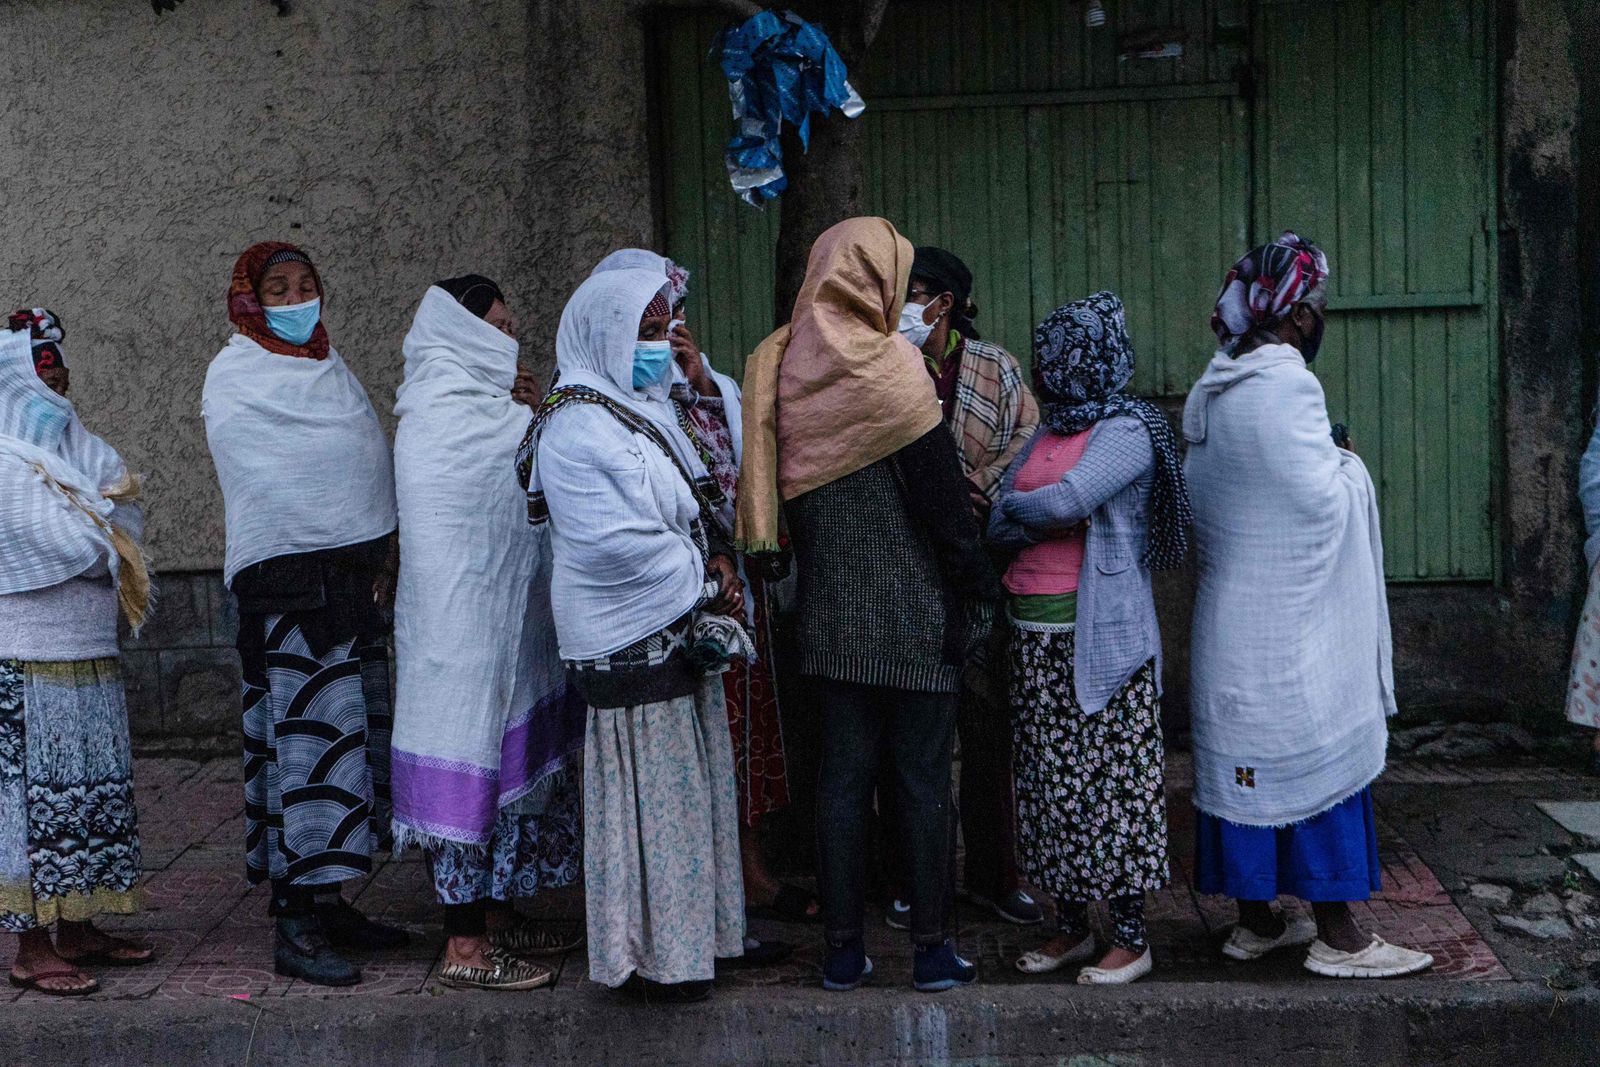 إثيوبيون في طابور خارج مركز اقتراع للإدلاء بأصواتهم في أديس أبابا، إثيوبيا- 21 يونيو 2021  - AFP